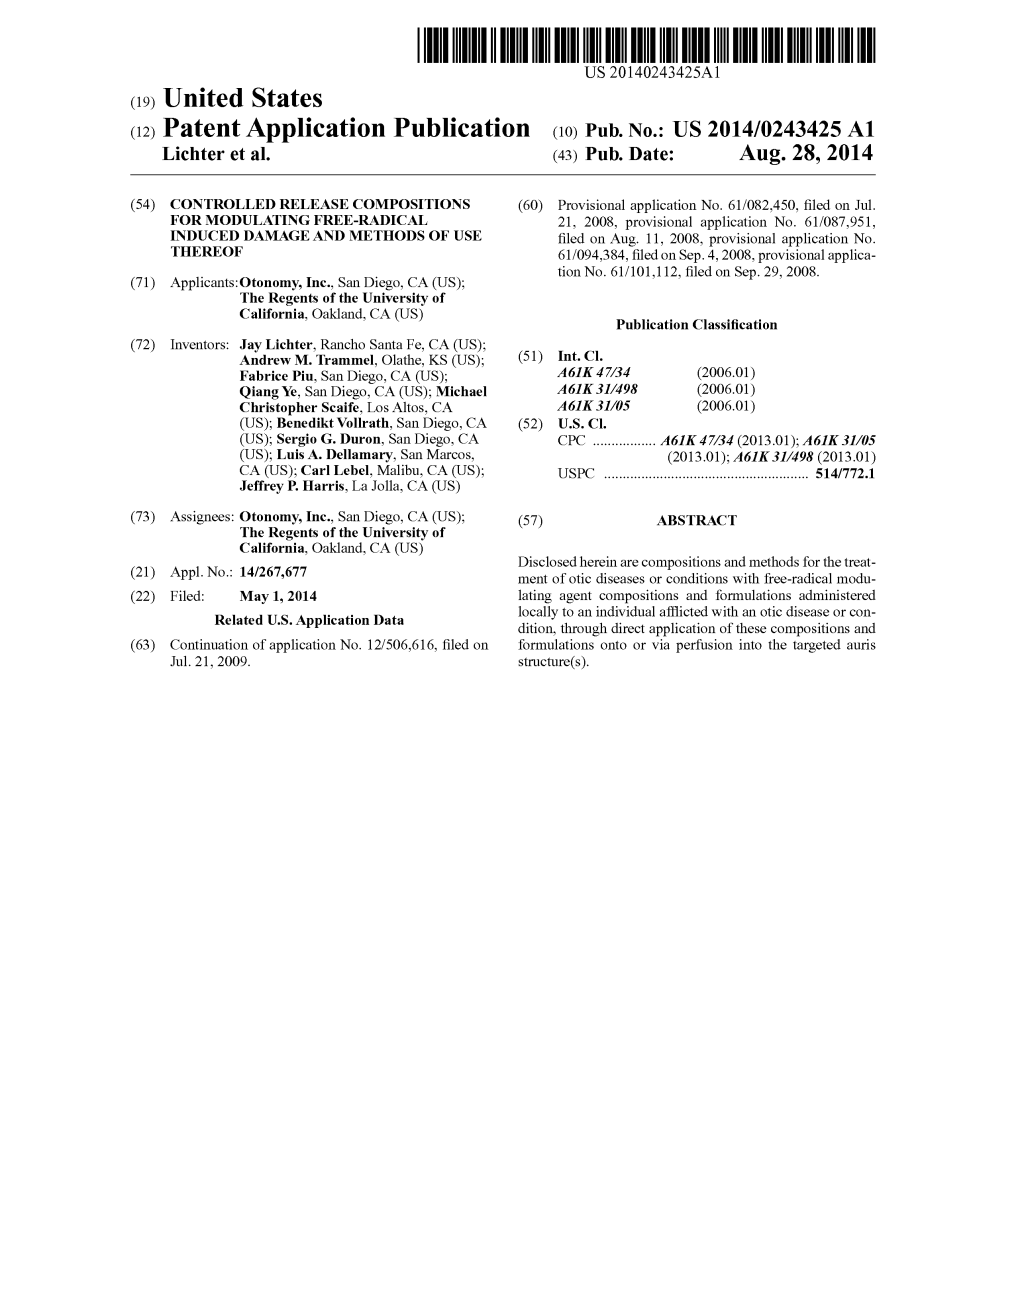 (12) Patent Application Publication (10) Pub. No.: US 2014/0243425 A1 Lichter Et Al